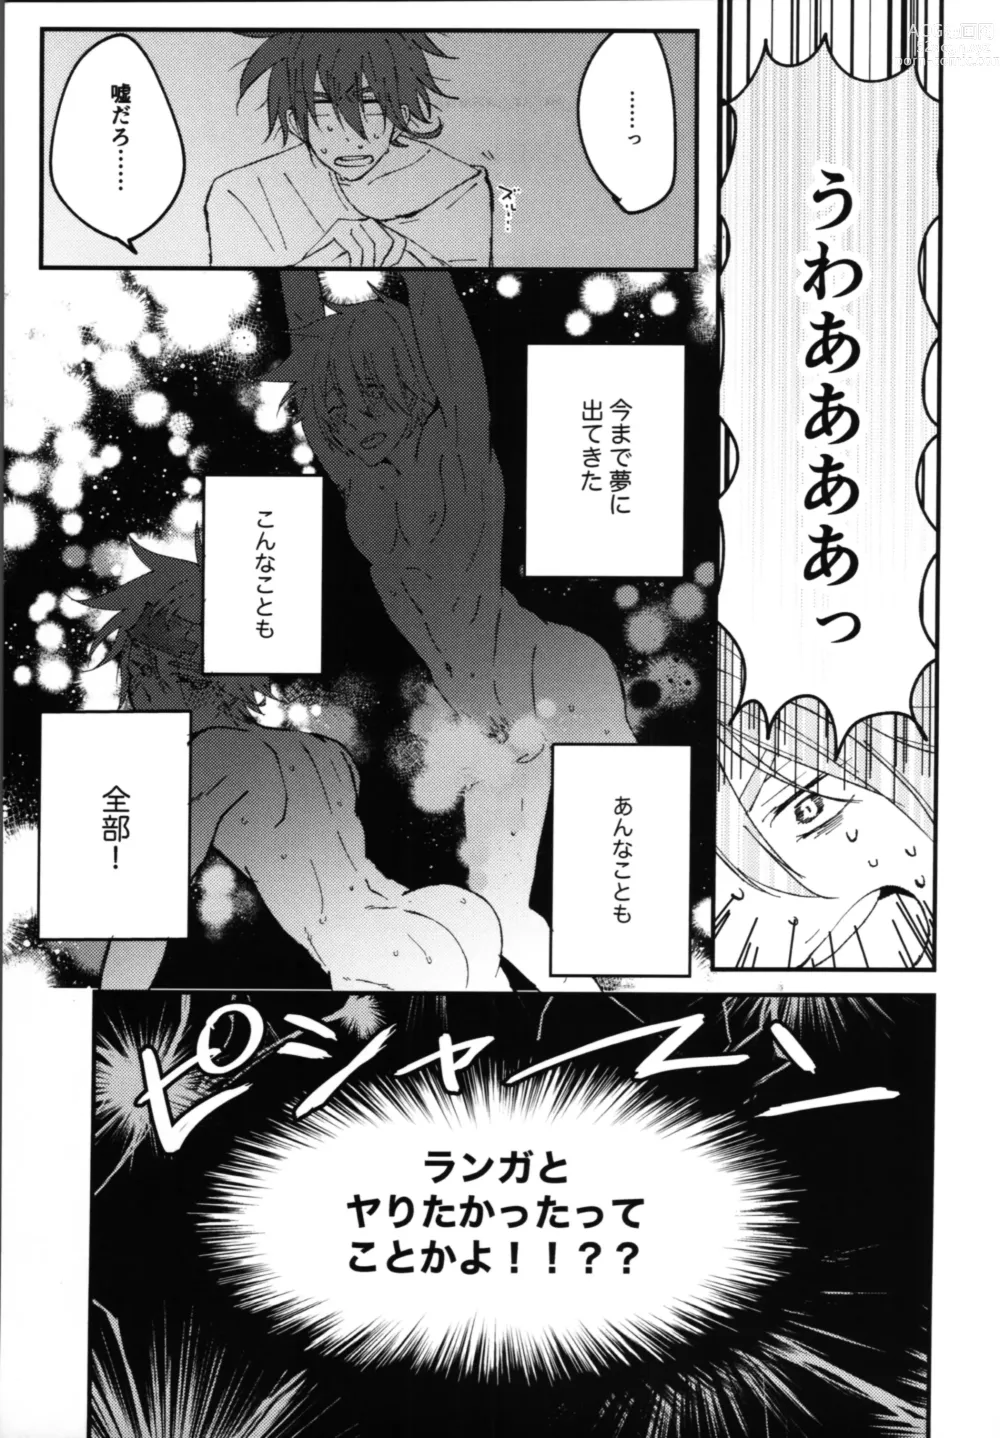 Page 8 of doujinshi Kimi no negao ni koishiteru